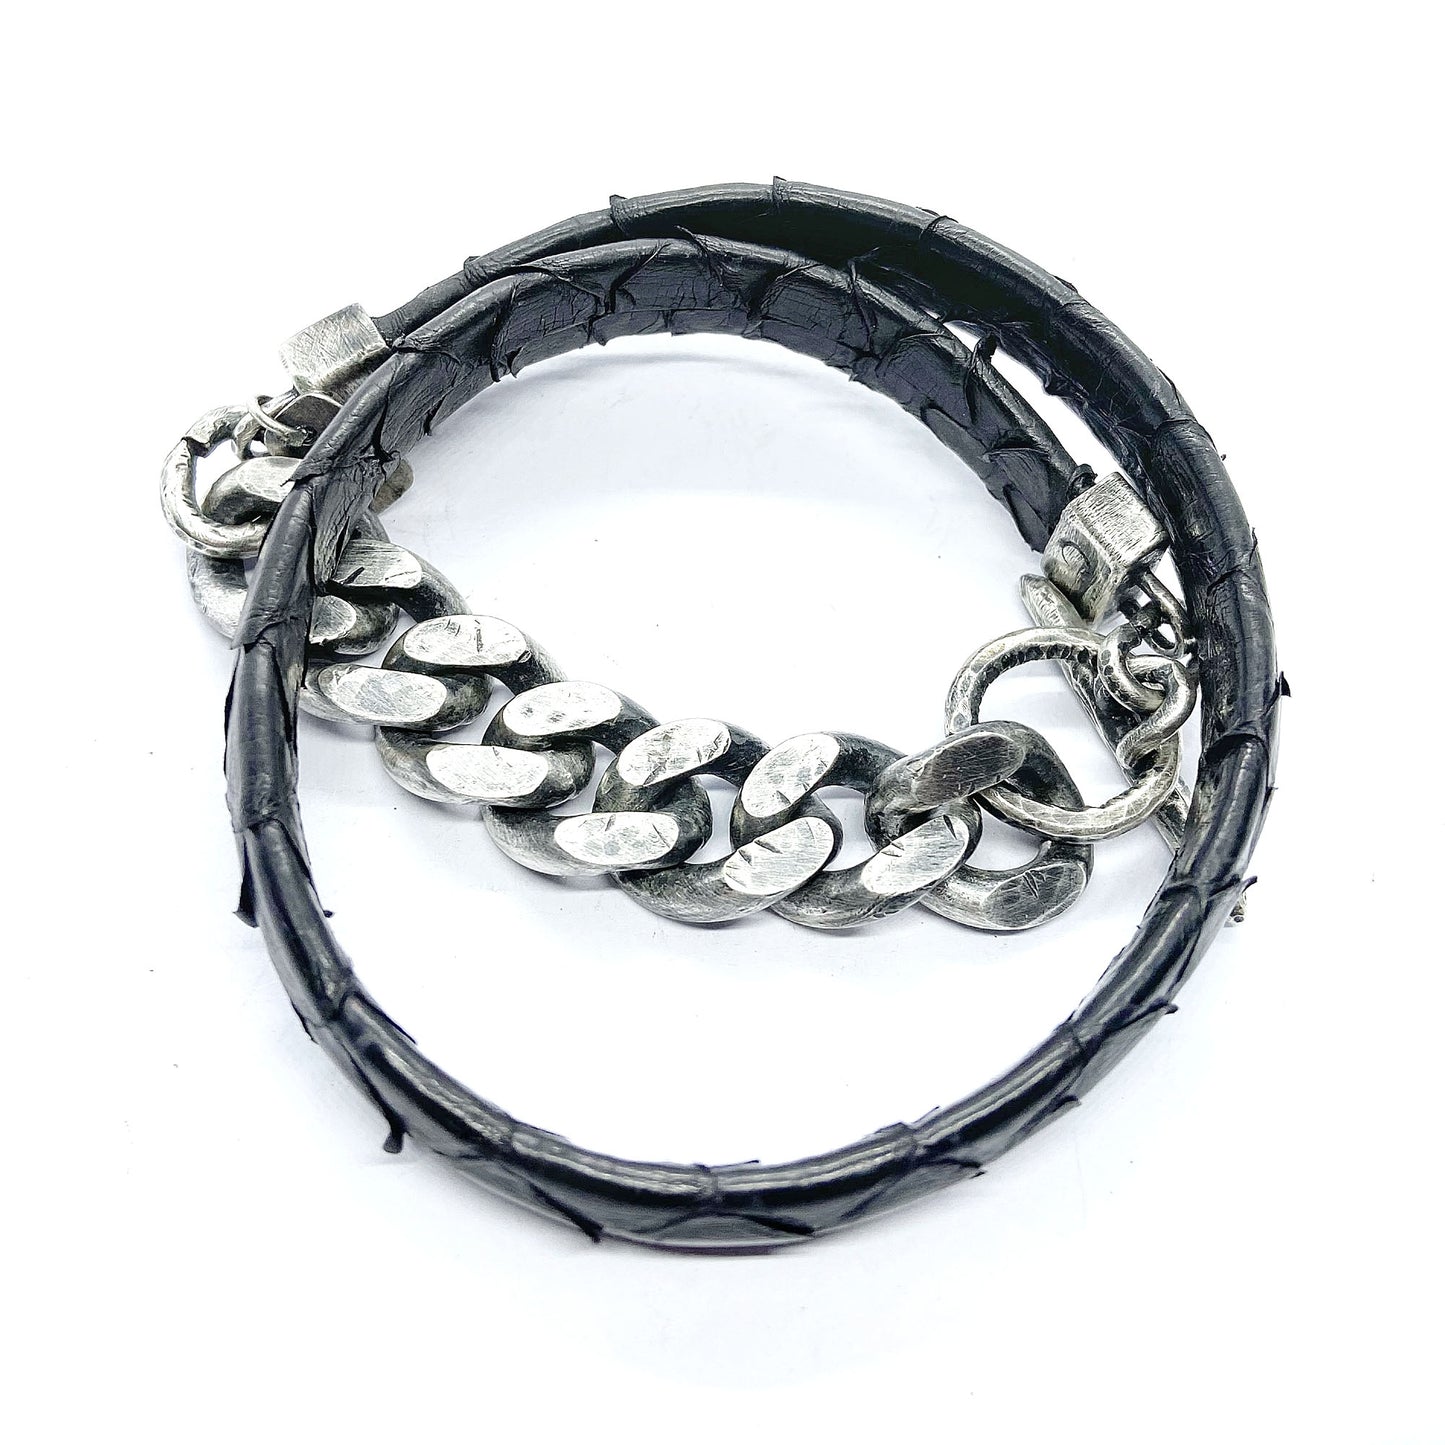 Curb chain wrap bracelet